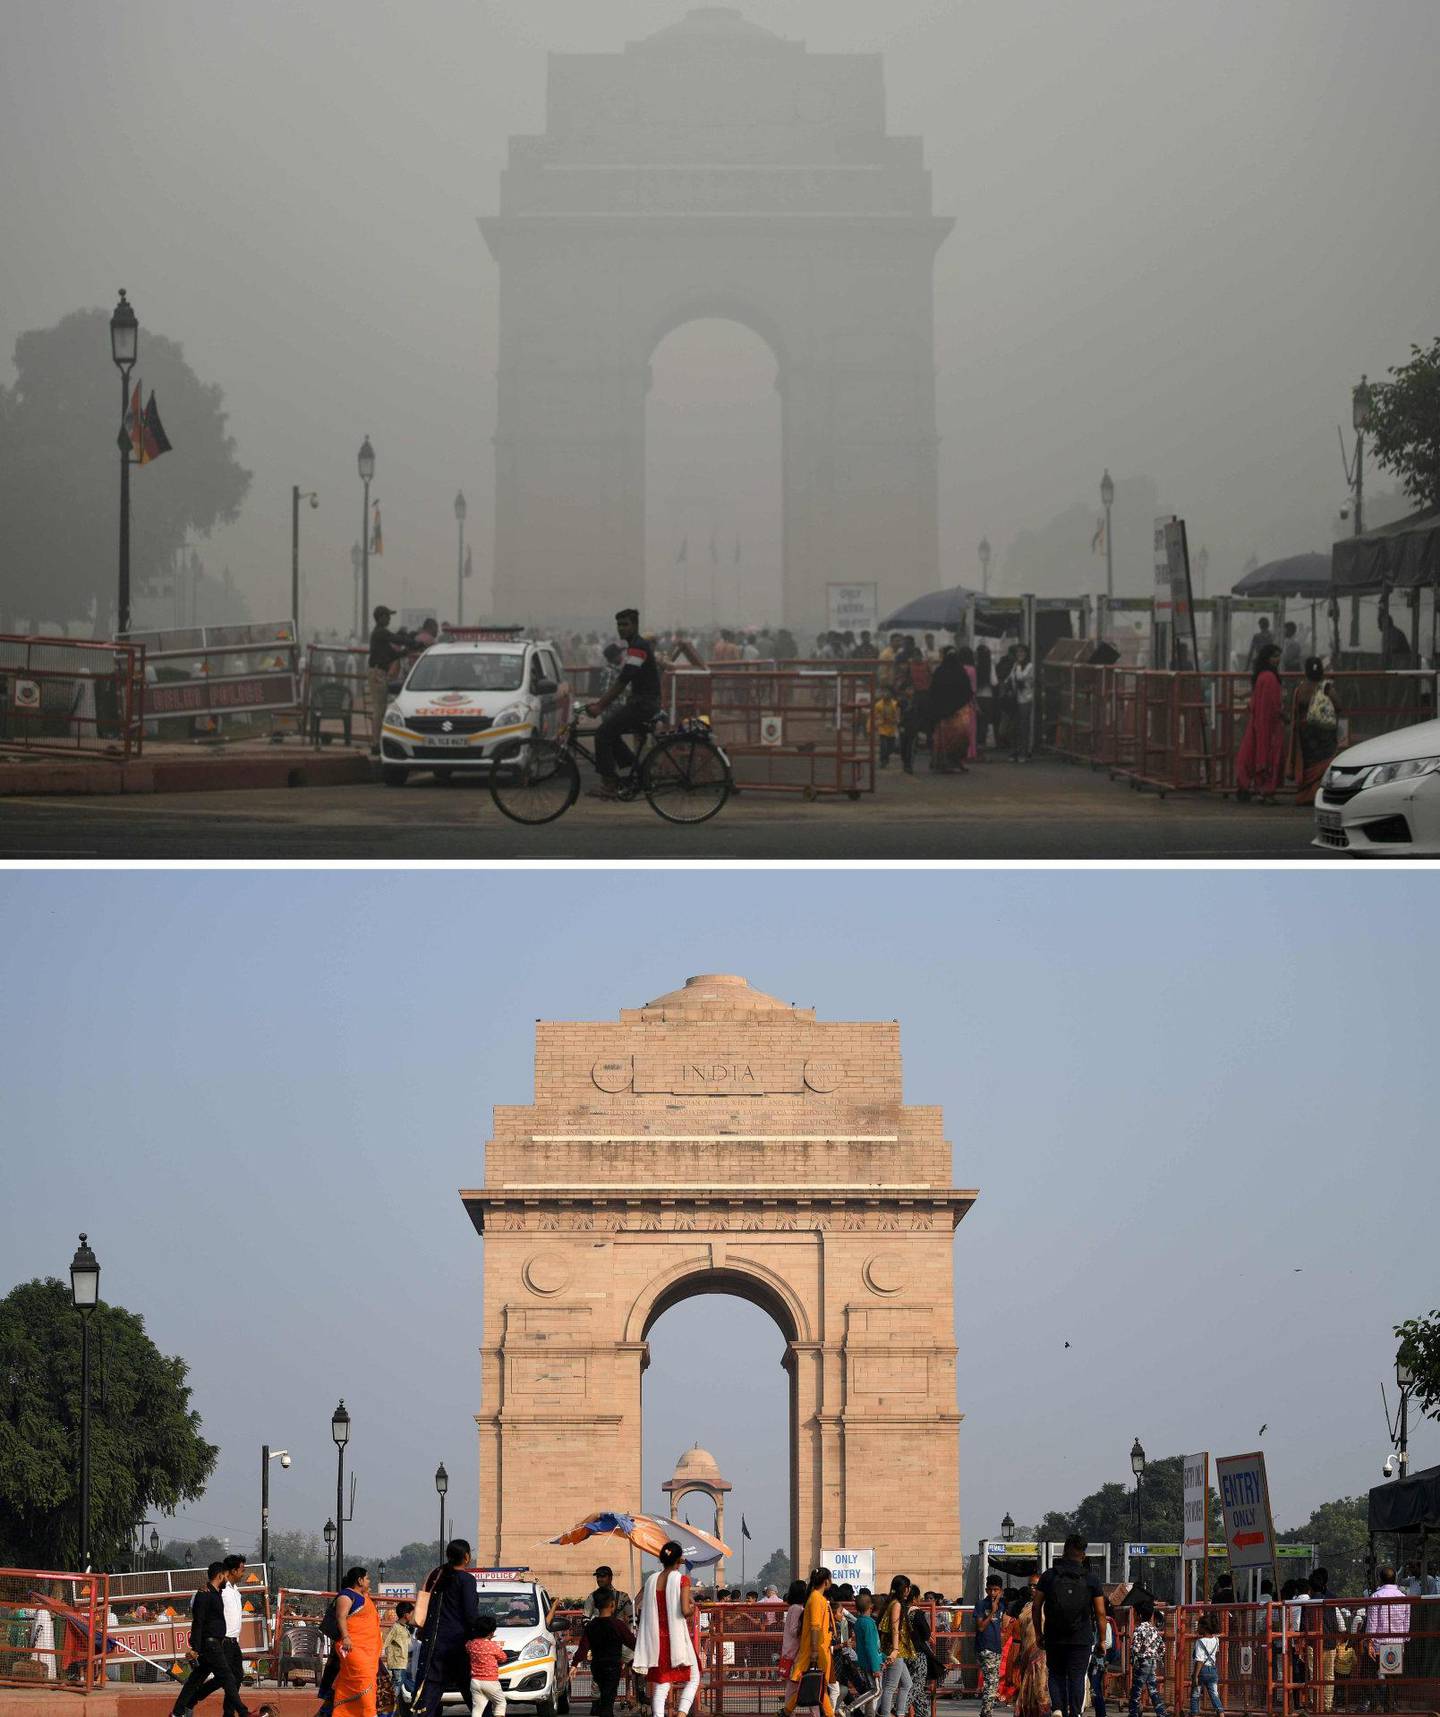 India Gate i New Delhi 3. november (øverst) under et tett lag av luftforurensning. 4. november (under) hadde det lettet, men det er fortsatt høy grad av luftforurensning i byen.FOTO: SAJJAD HUSSAIN/NTB SCANPIX